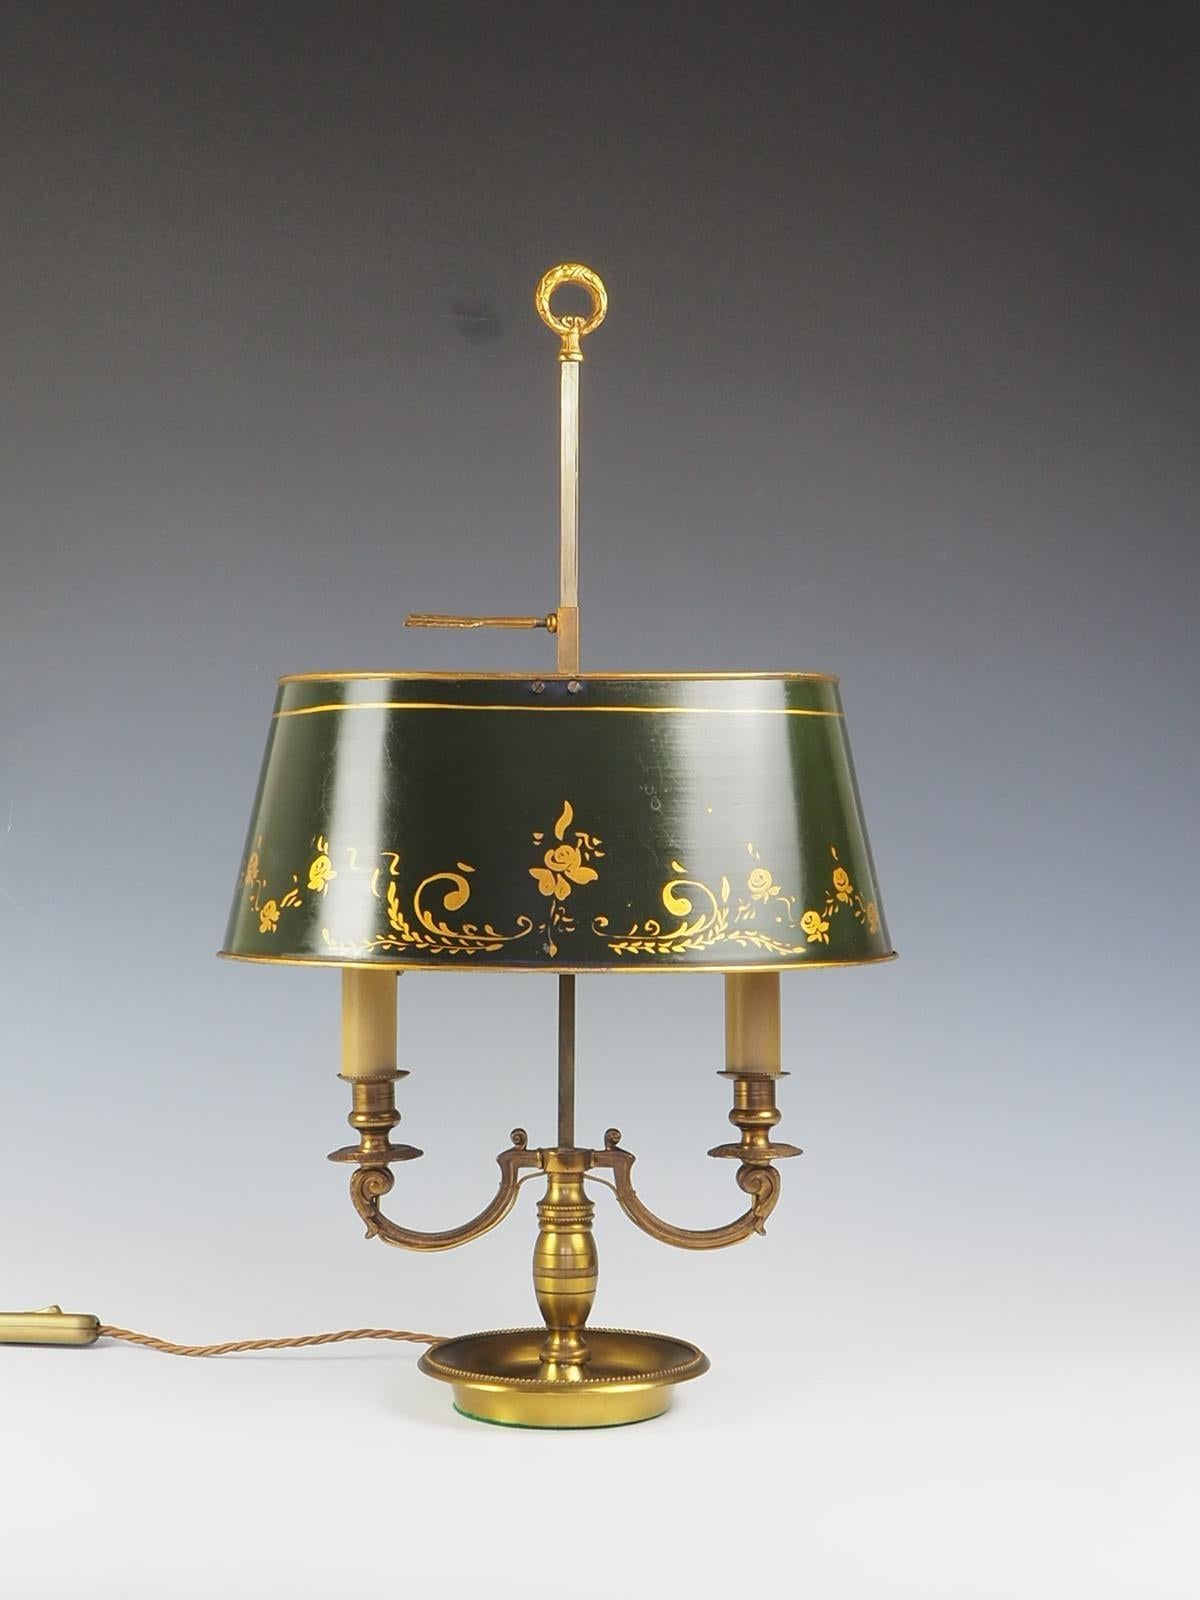 Die antike französische Bouillotte-Tischlampe aus dem 20. Jahrhundert ist ein wunderschönes Stück aus Messing mit zwei Armen und einem verstellbaren grünen Schirm.

Die Lampe strahlt Eleganz und Raffinesse aus und ist damit die perfekte Ergänzung